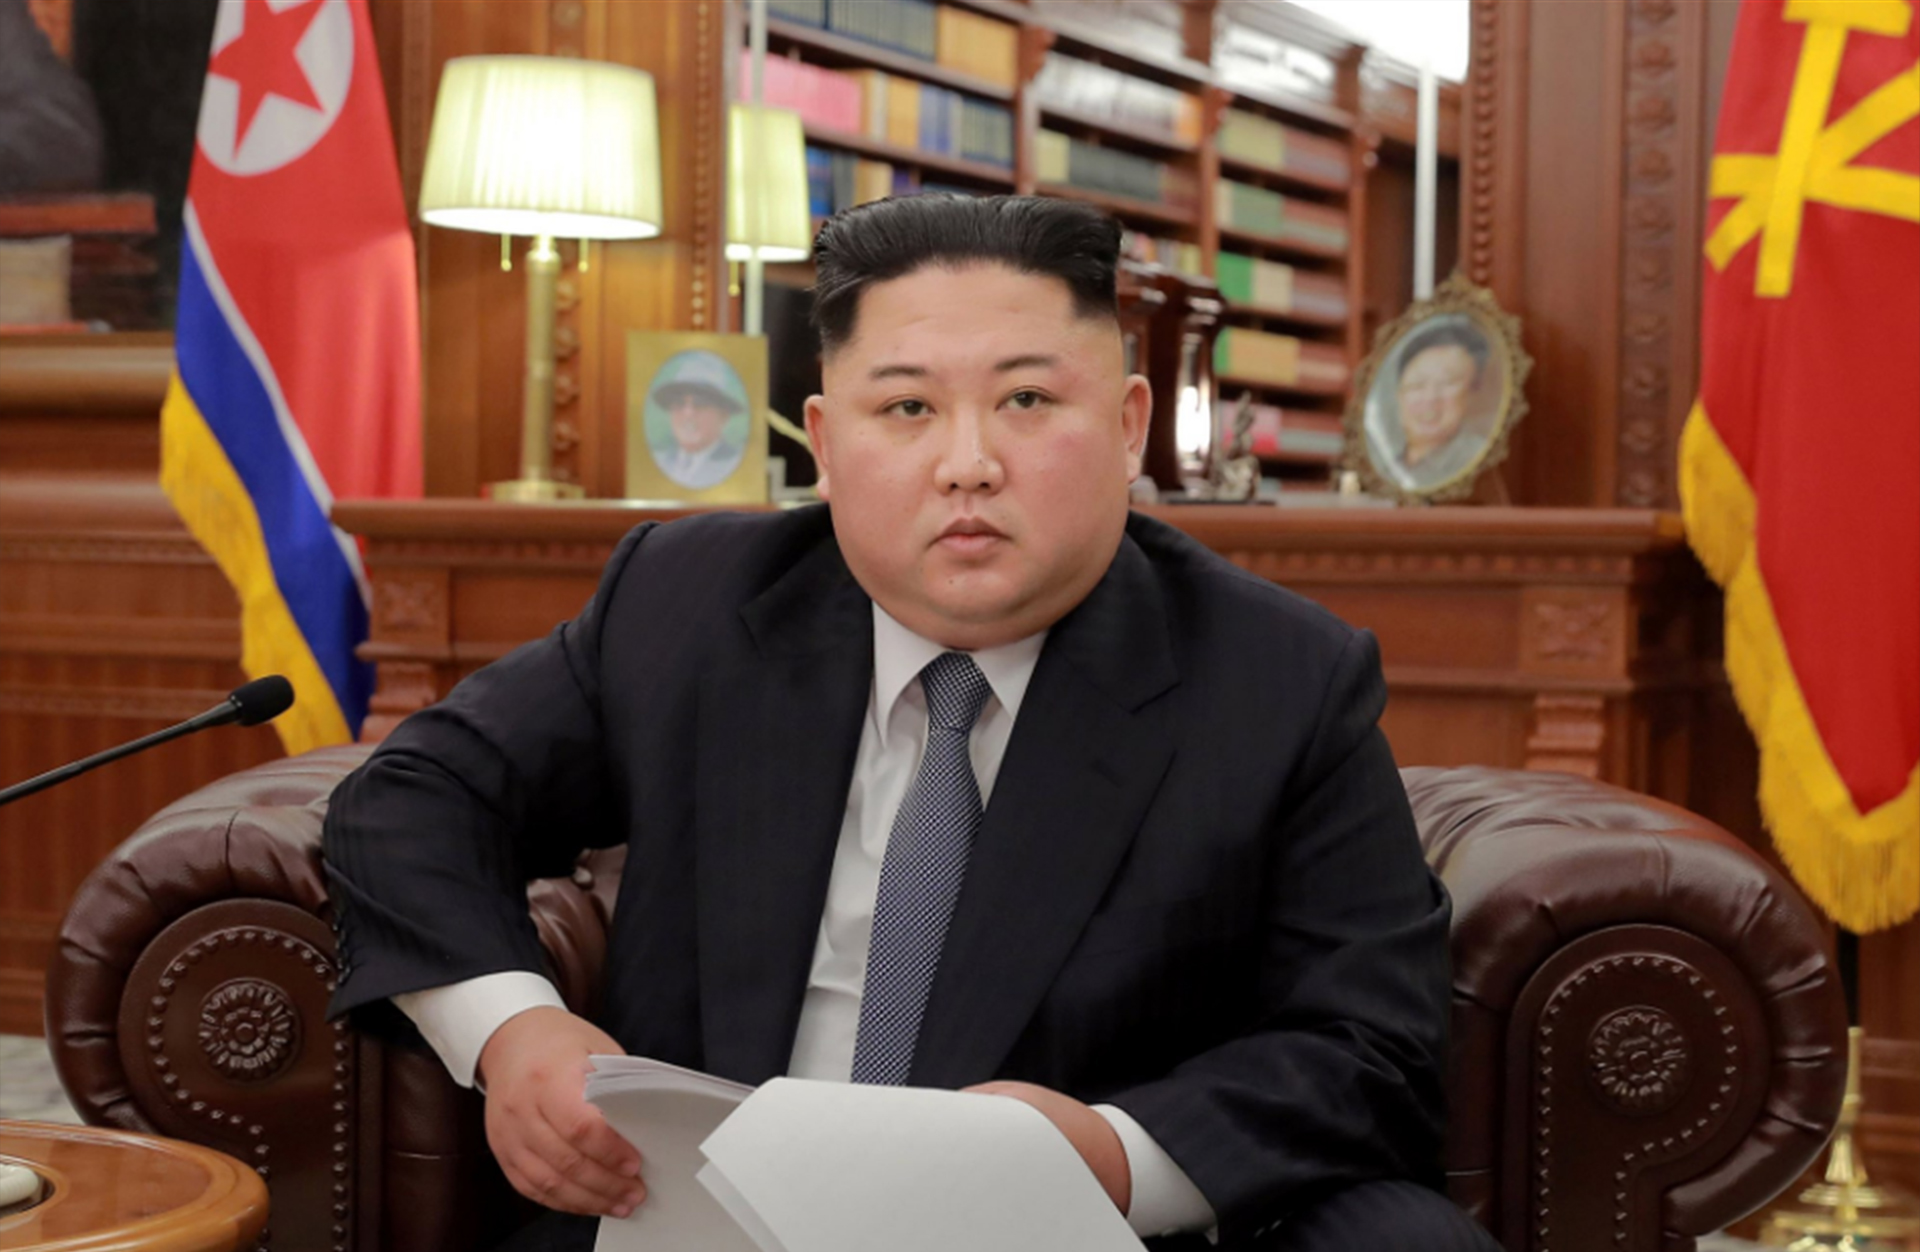 El líder norcoreano Kim Jong Un no ha dado cuenta completa de las instalaciones de misiles balísticos y su programa de armas nucleares en su país. (Reuters)